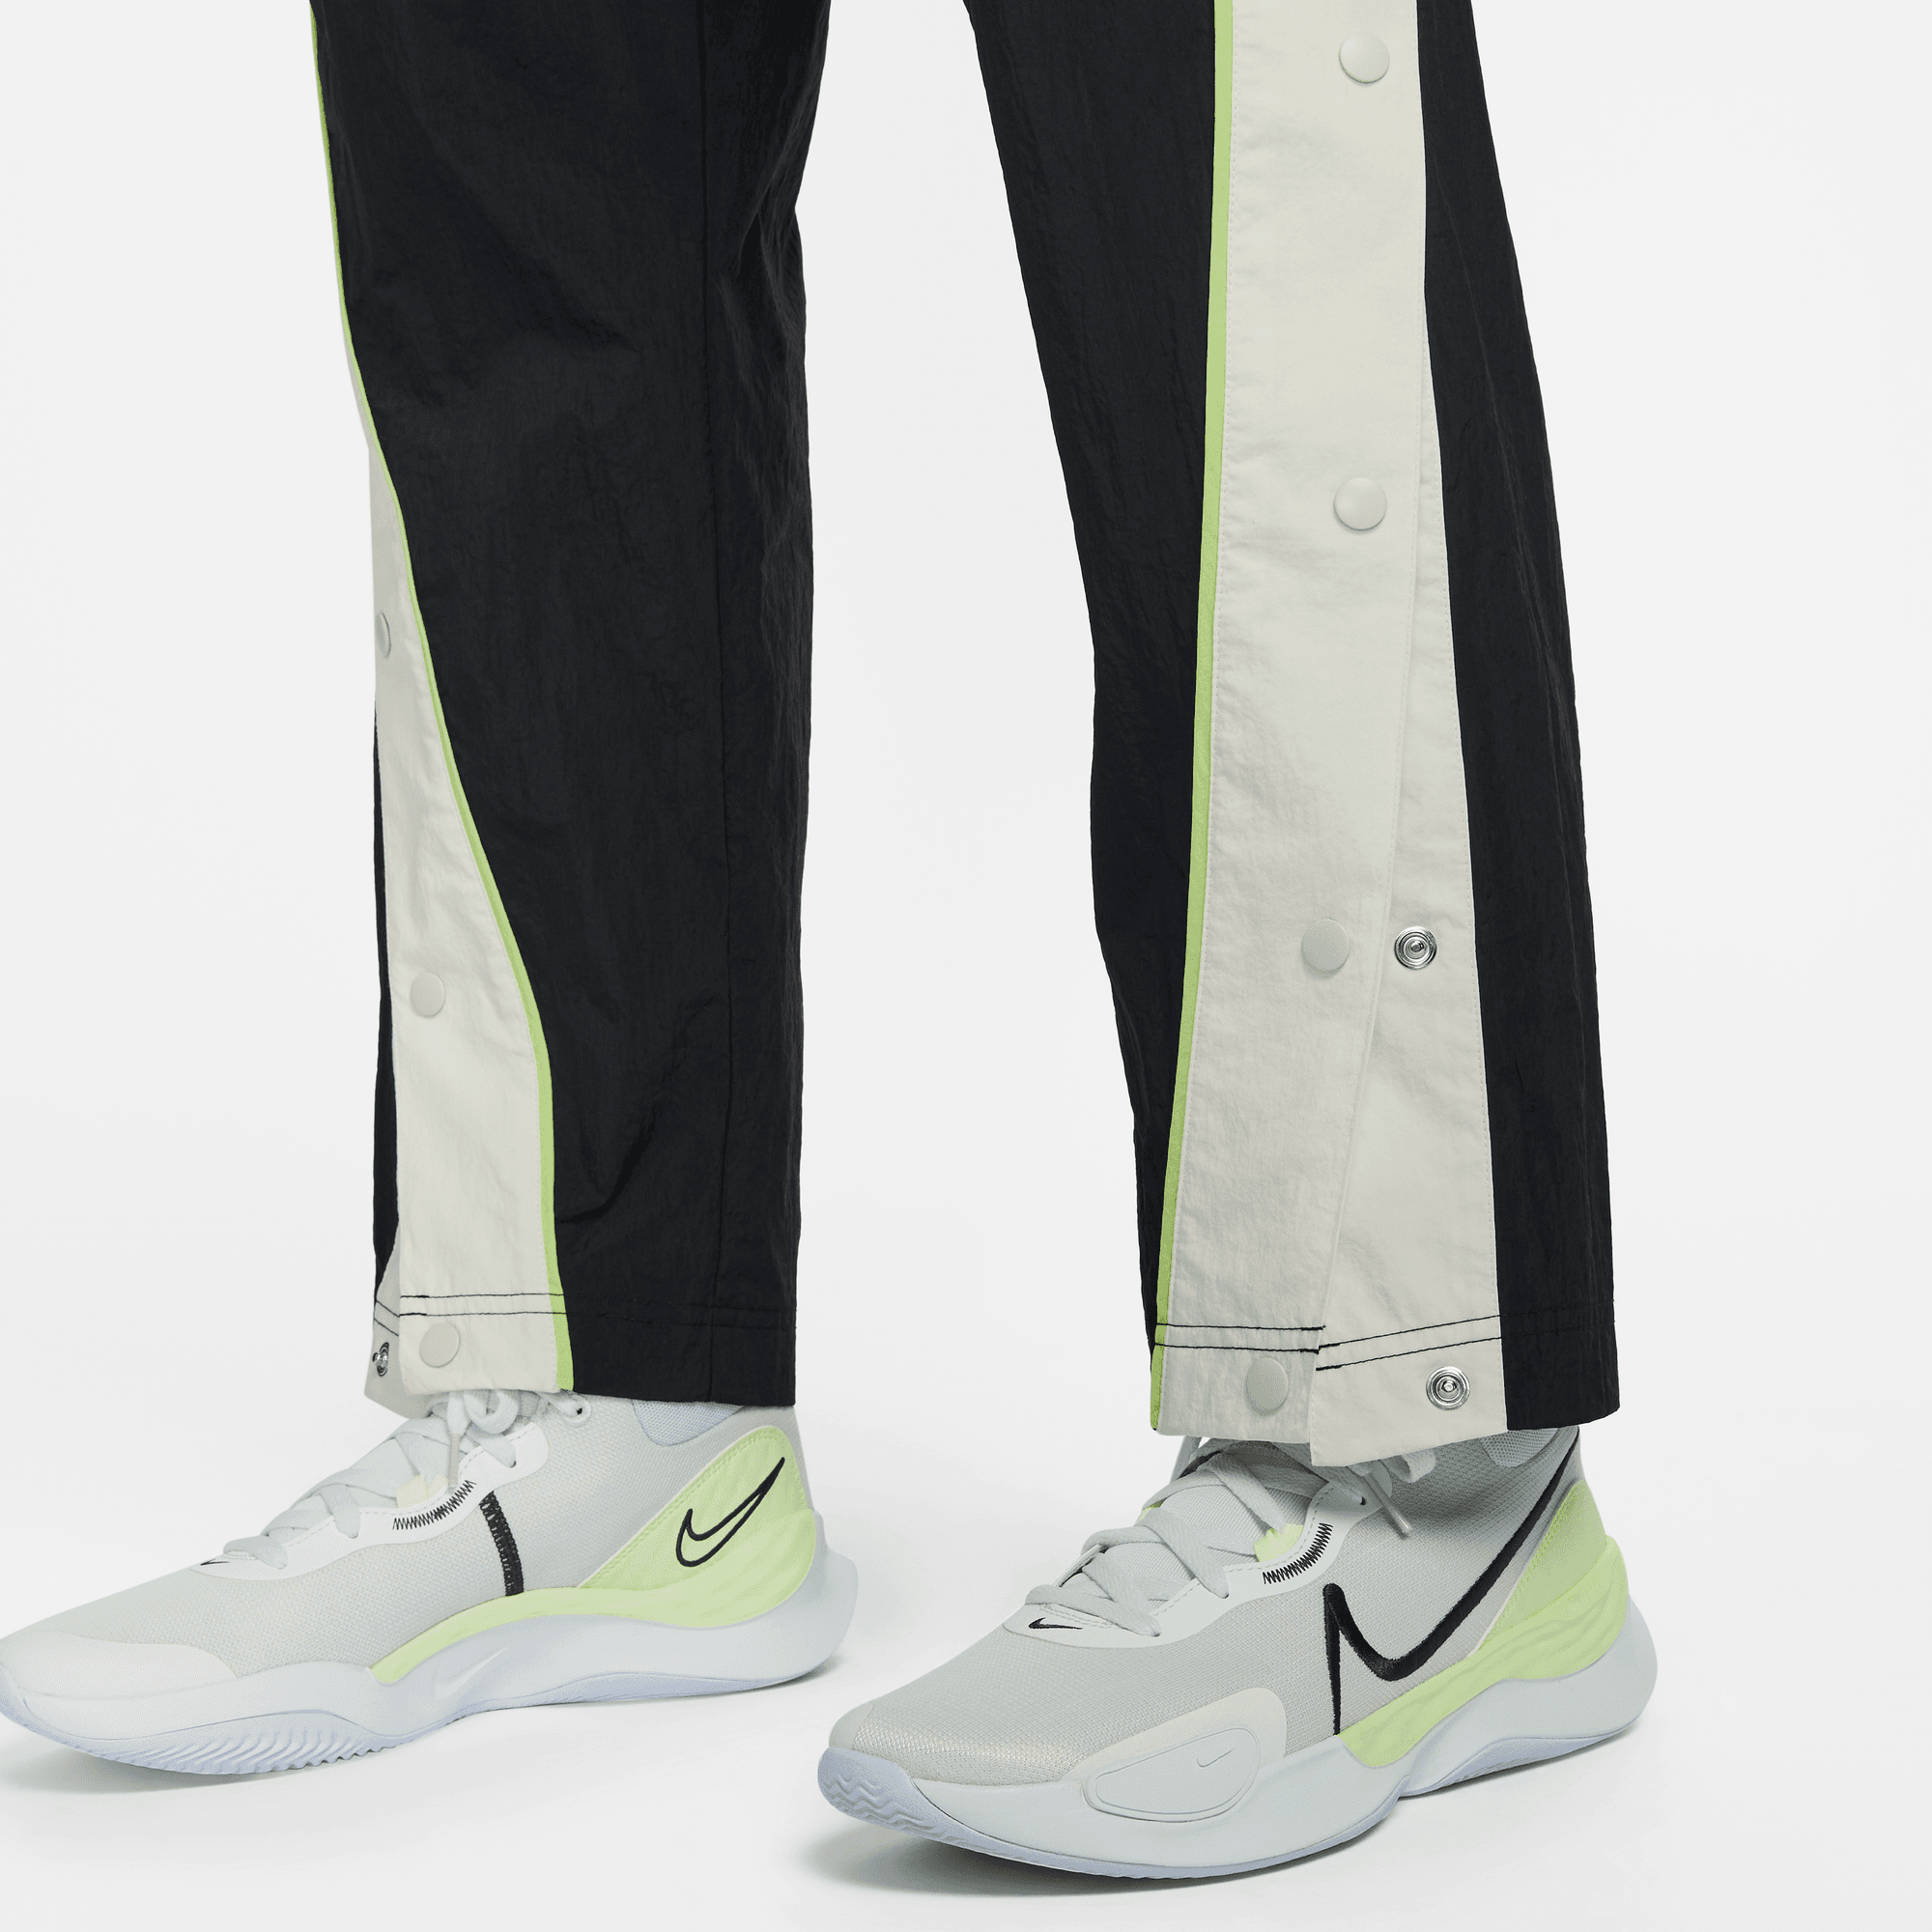 Nike Men's Woven Basketball Pants.